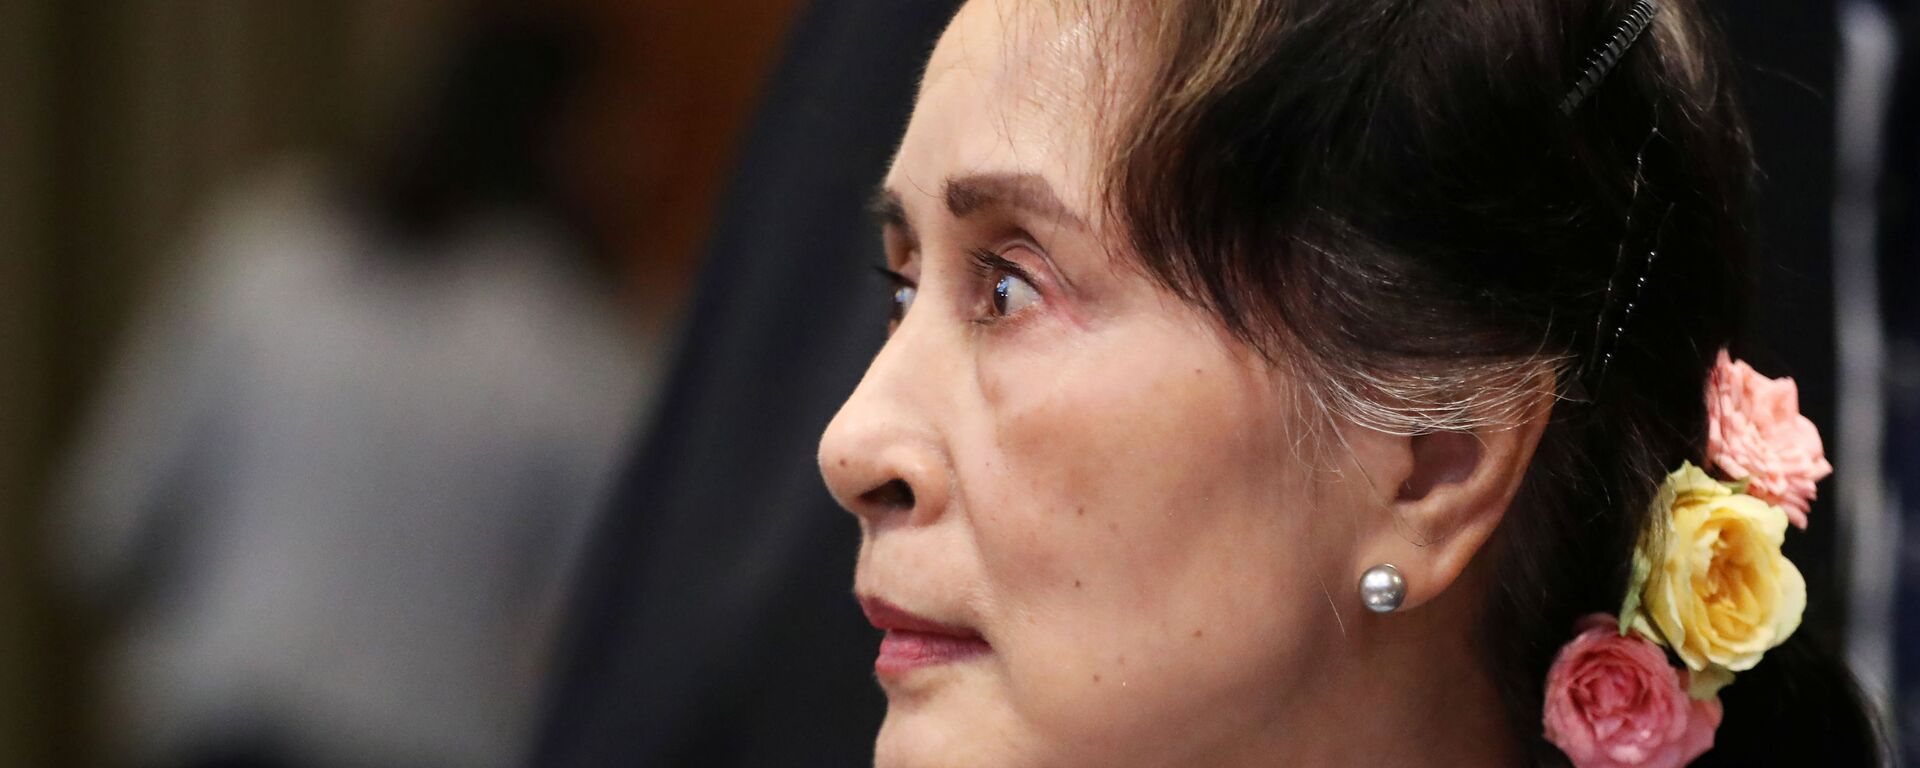 Arakan'daki şiddet dalgasından beri kendisine layık görülen pek çok ödül geri alınan Aung San Suu Kyi, ICJ'de savunma yaparken, dışarıda büyük bir kalabalığın destek gösterisine mazhar oldu.  - Sputnik Türkiye, 1920, 24.05.2021